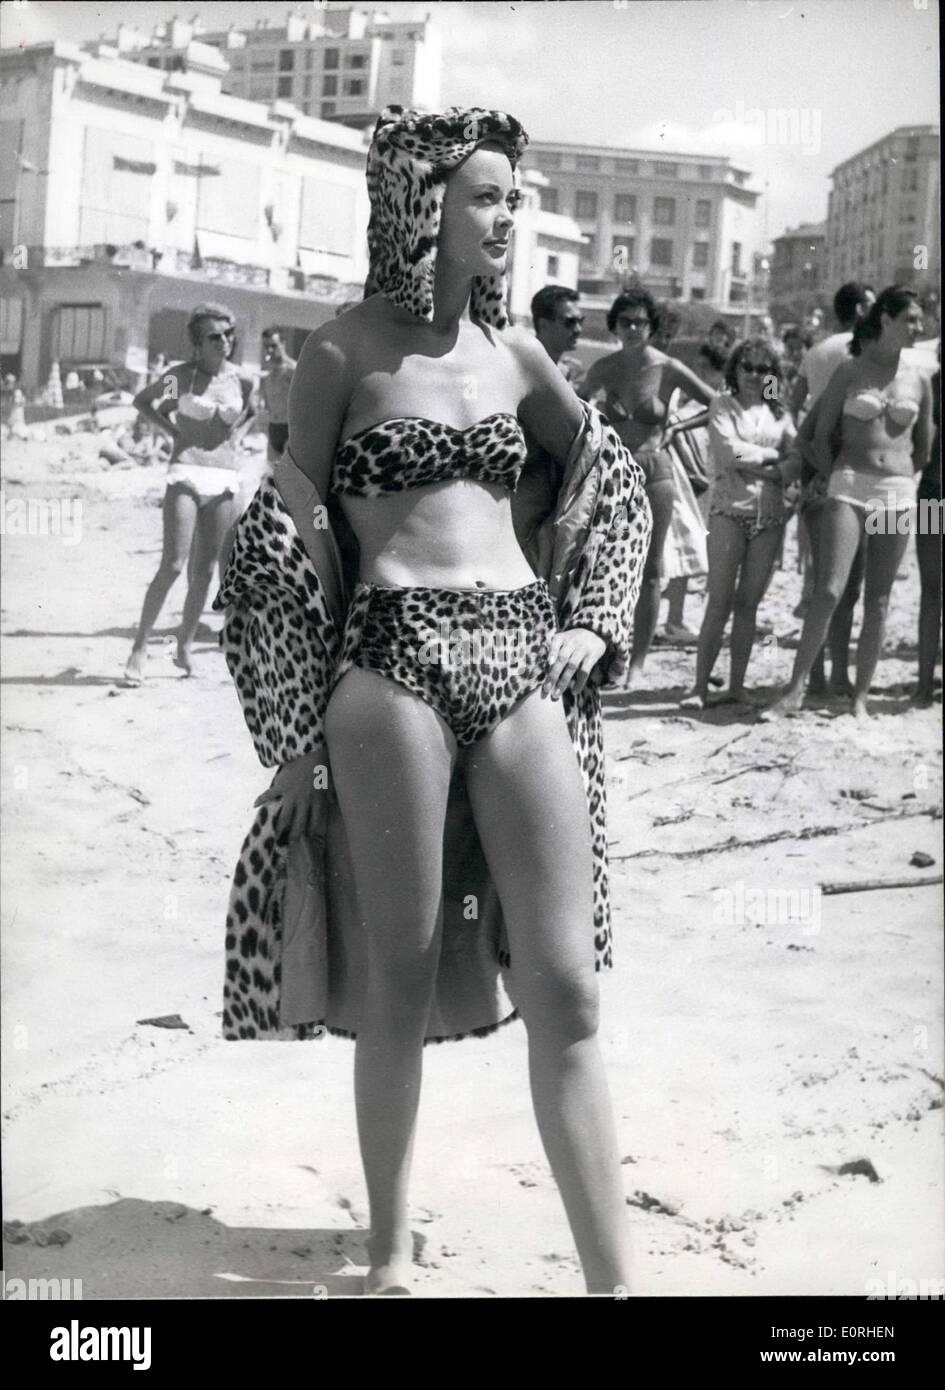 08 août 1959 - Londres, prendre part à des modèles &pound;250 000 British fashion show à Biarritz : Les membres de la société internationale se sont réunis à Bearritz cette fin de semaine, lorsque six grands modèles Londres affiché en mode fourrure &pound;250 000 défilé de gala. Le duc et la duchesse de Windsor, et de nombreuses personnalités célèbres y ont assisté. La photo montre la Nena Dubios, l'un des modèles, qui ont pris part à la fashion show, provoque une sensation quand elle est allée à la plage à Biarritz revêtu de ce manteau en peau de léopard bikini et chapeau pour le match. Banque D'Images